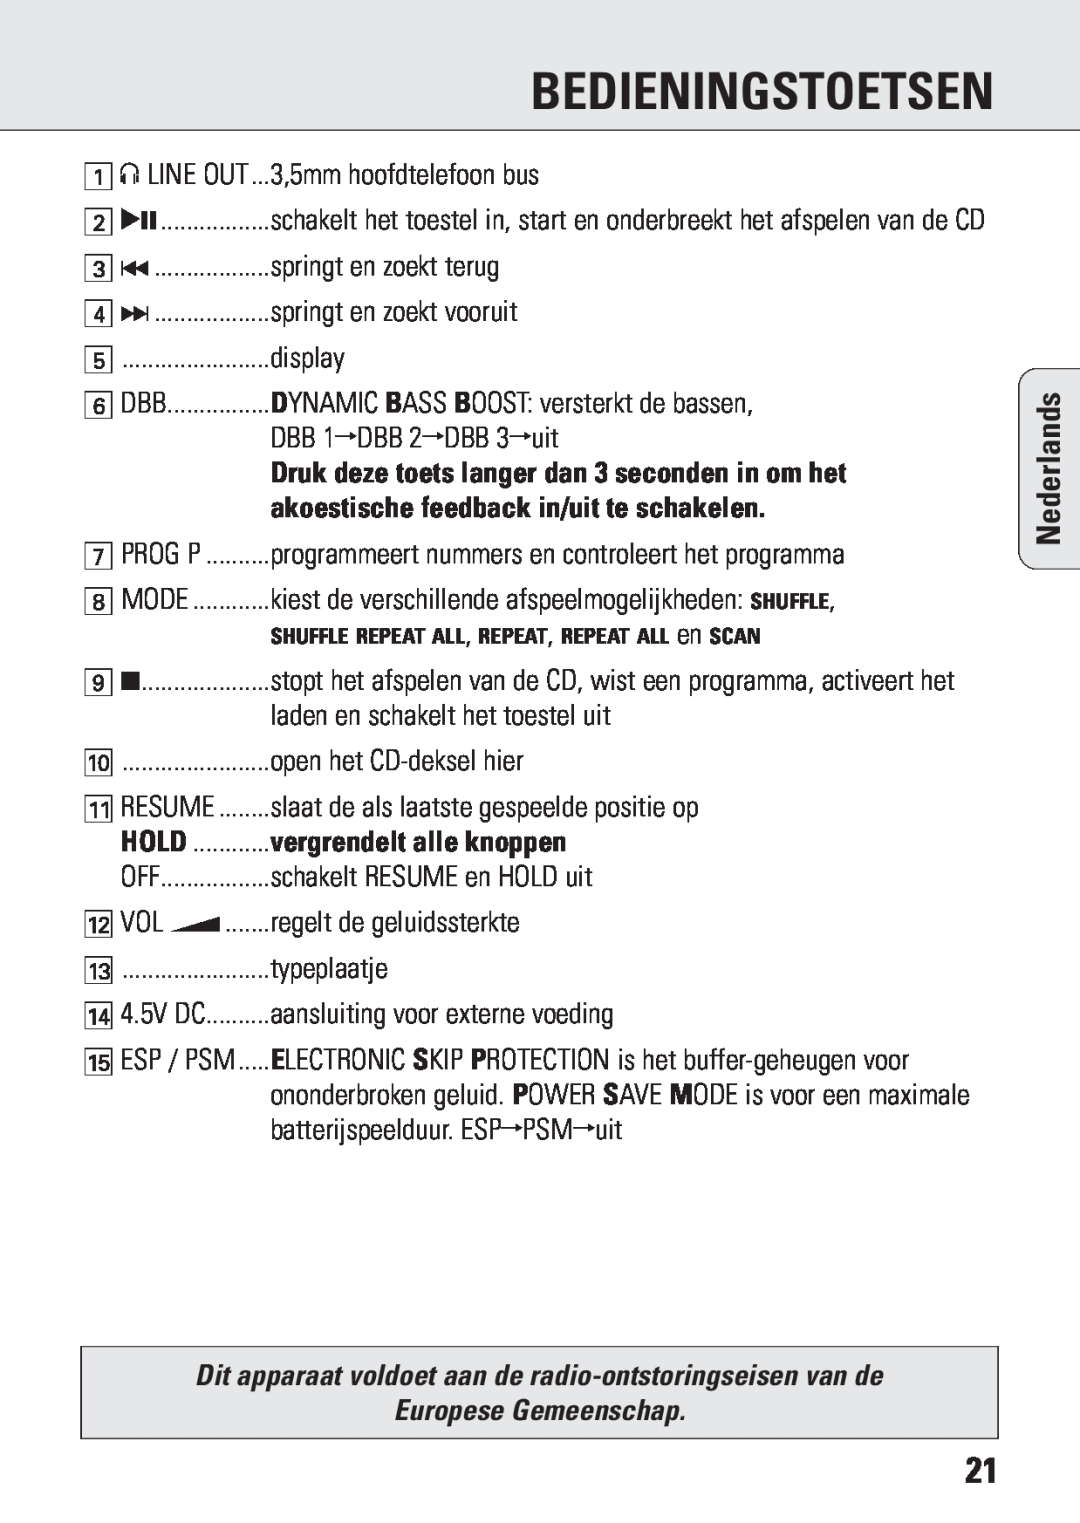 Philips ACT 7583 manual Bedieningstoetsen, vergrendelt alle knoppen, Europese Gemeenschap, Nederlands 